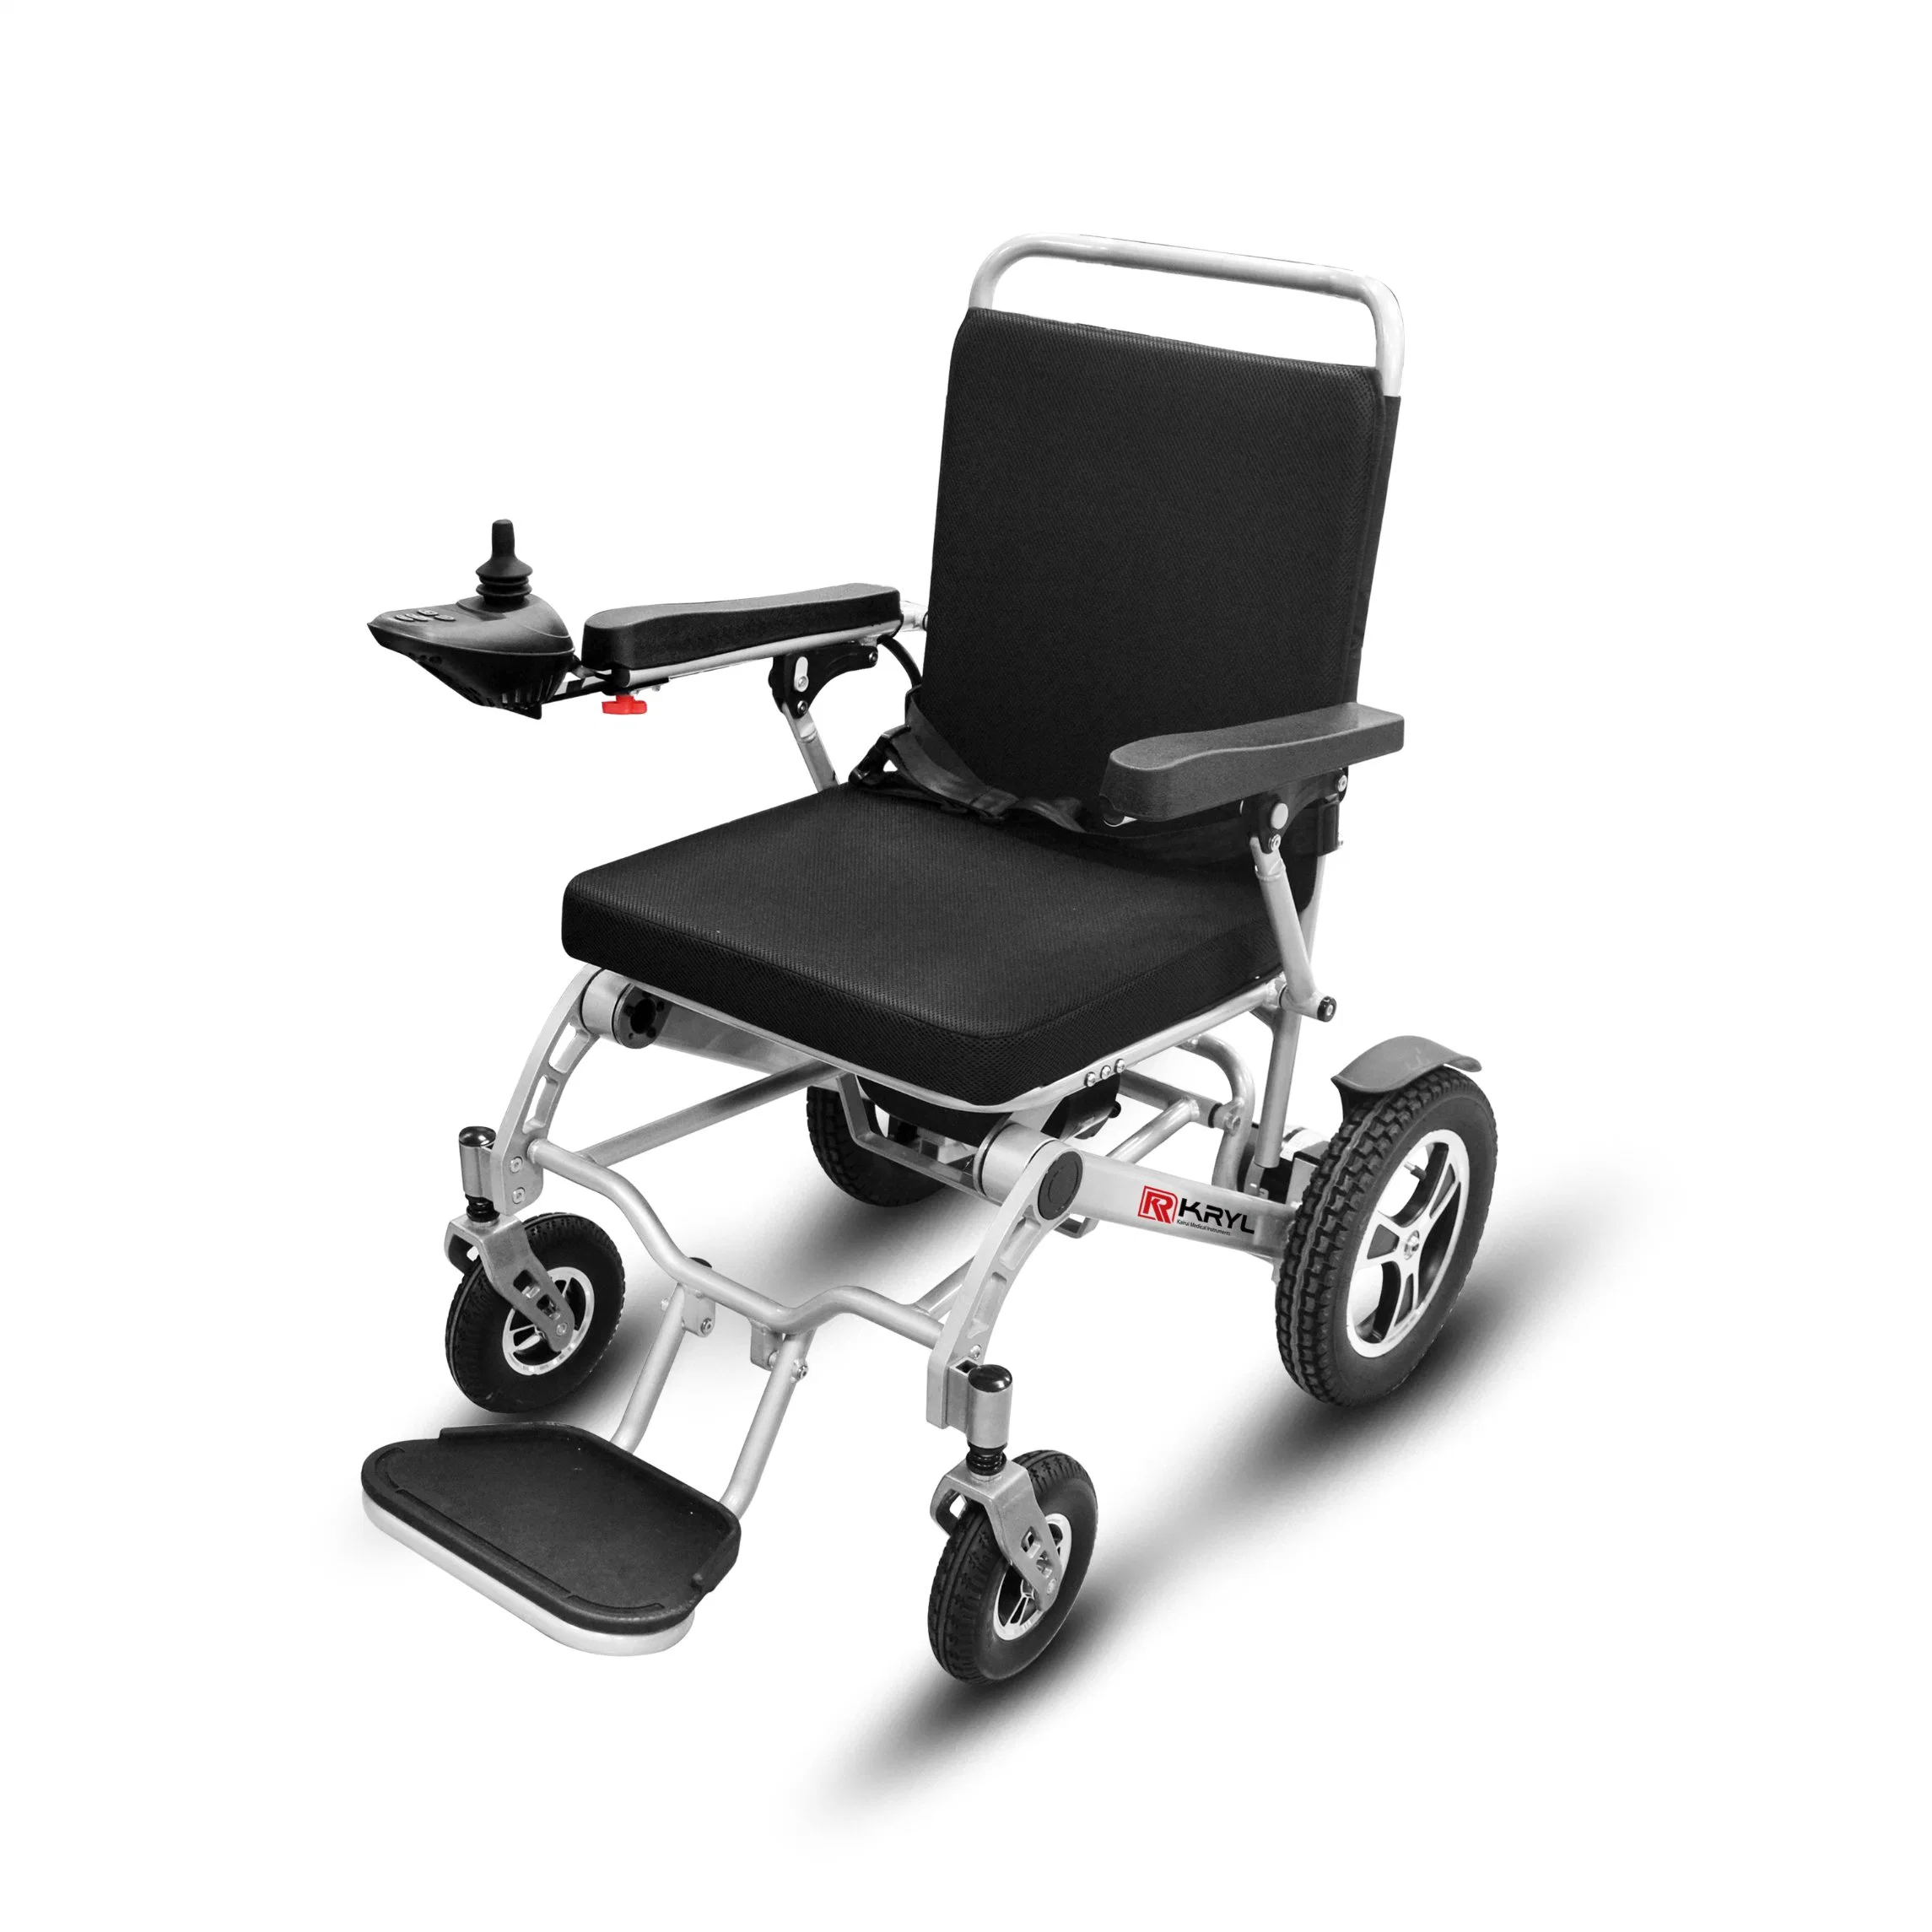 التحكم عن بُعد كرسي متحرك كهربائي قابل للطي وموضع قابل للطي سهل منتجات الإعاقة للأشخاص المعاقين وElder